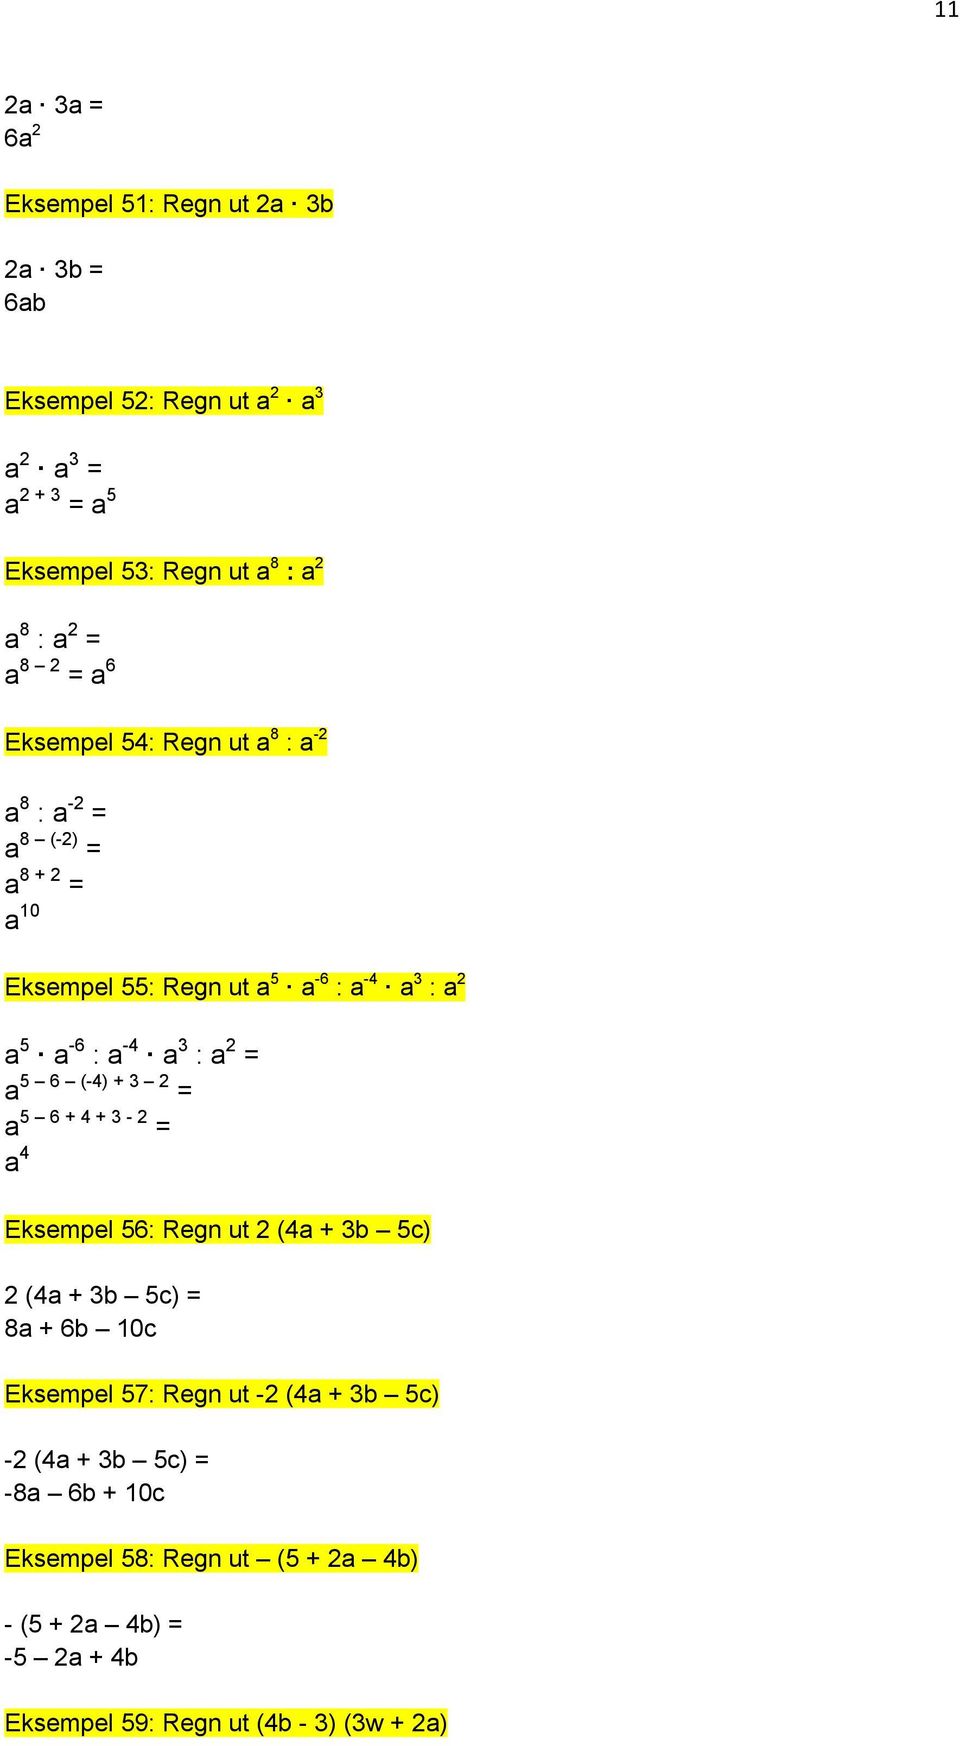 : a -4 a 3 : a 2 = a 5 6 (-4) + 3 2 = a 5 6 + 4 + 3-2 = a 4 Eksempel 56: Regn ut 2 (4a + 3b 5c) 2 (4a + 3b 5c) = 8a + 6b 10c Eksempel 57: Regn ut